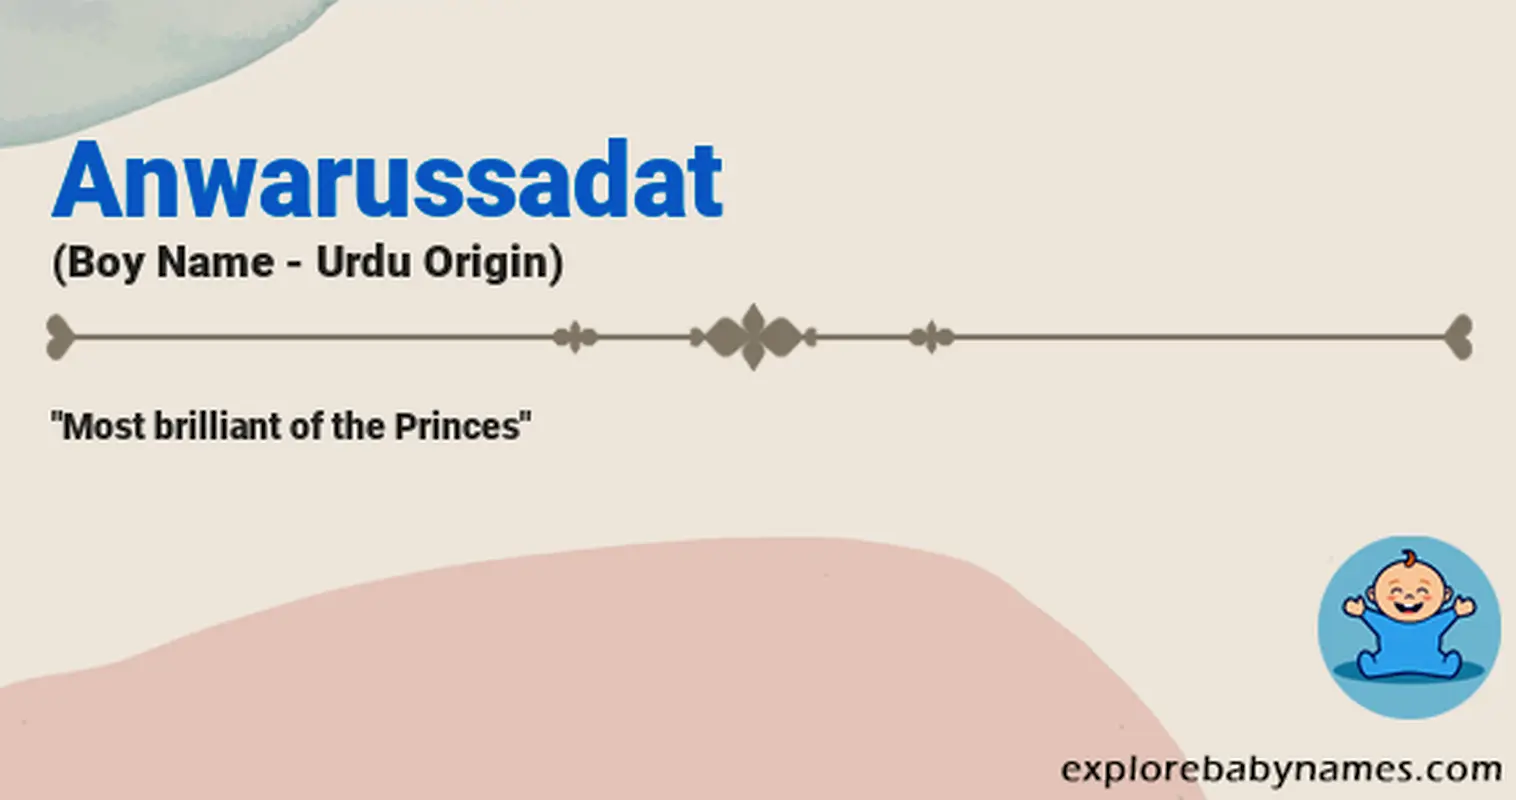 Meaning of Anwarussadat